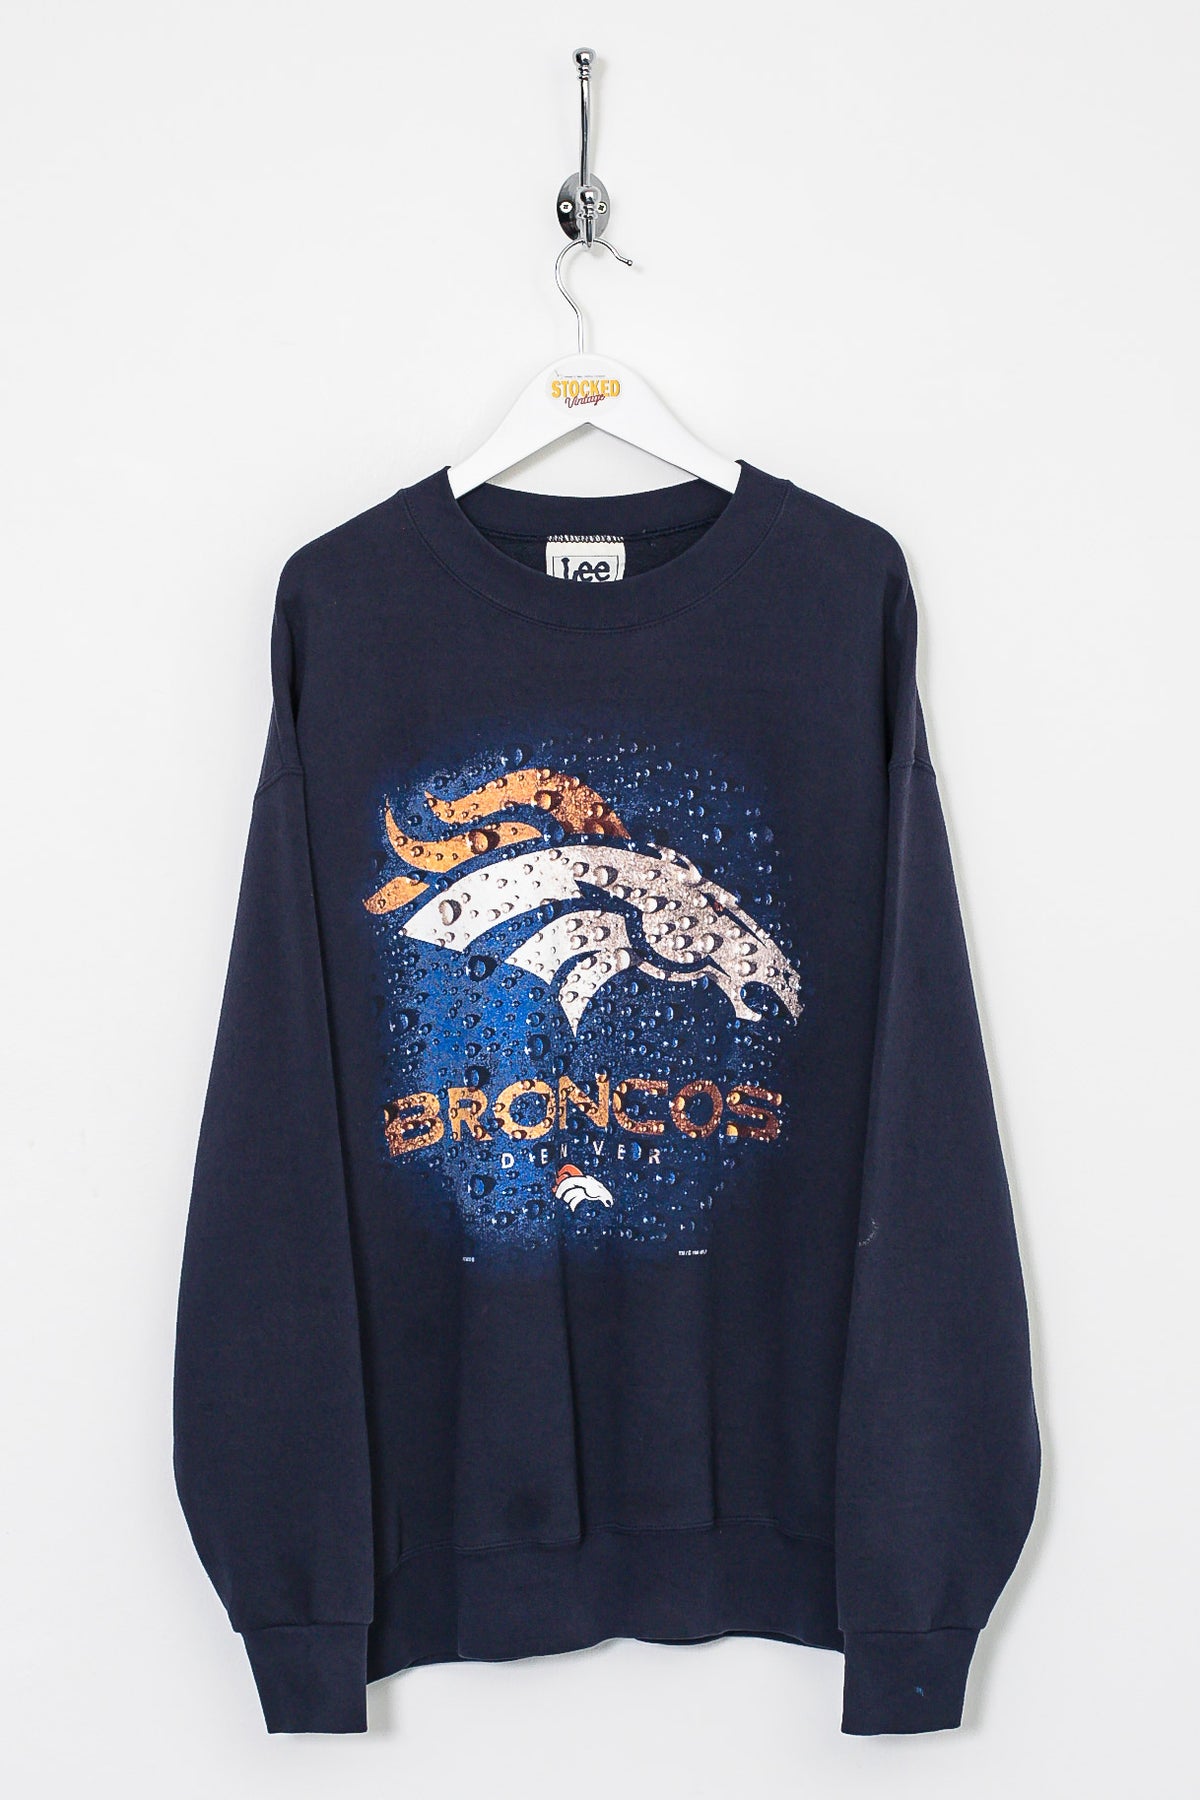 1998 NFL Denver Broncos Sweatshirt (L)